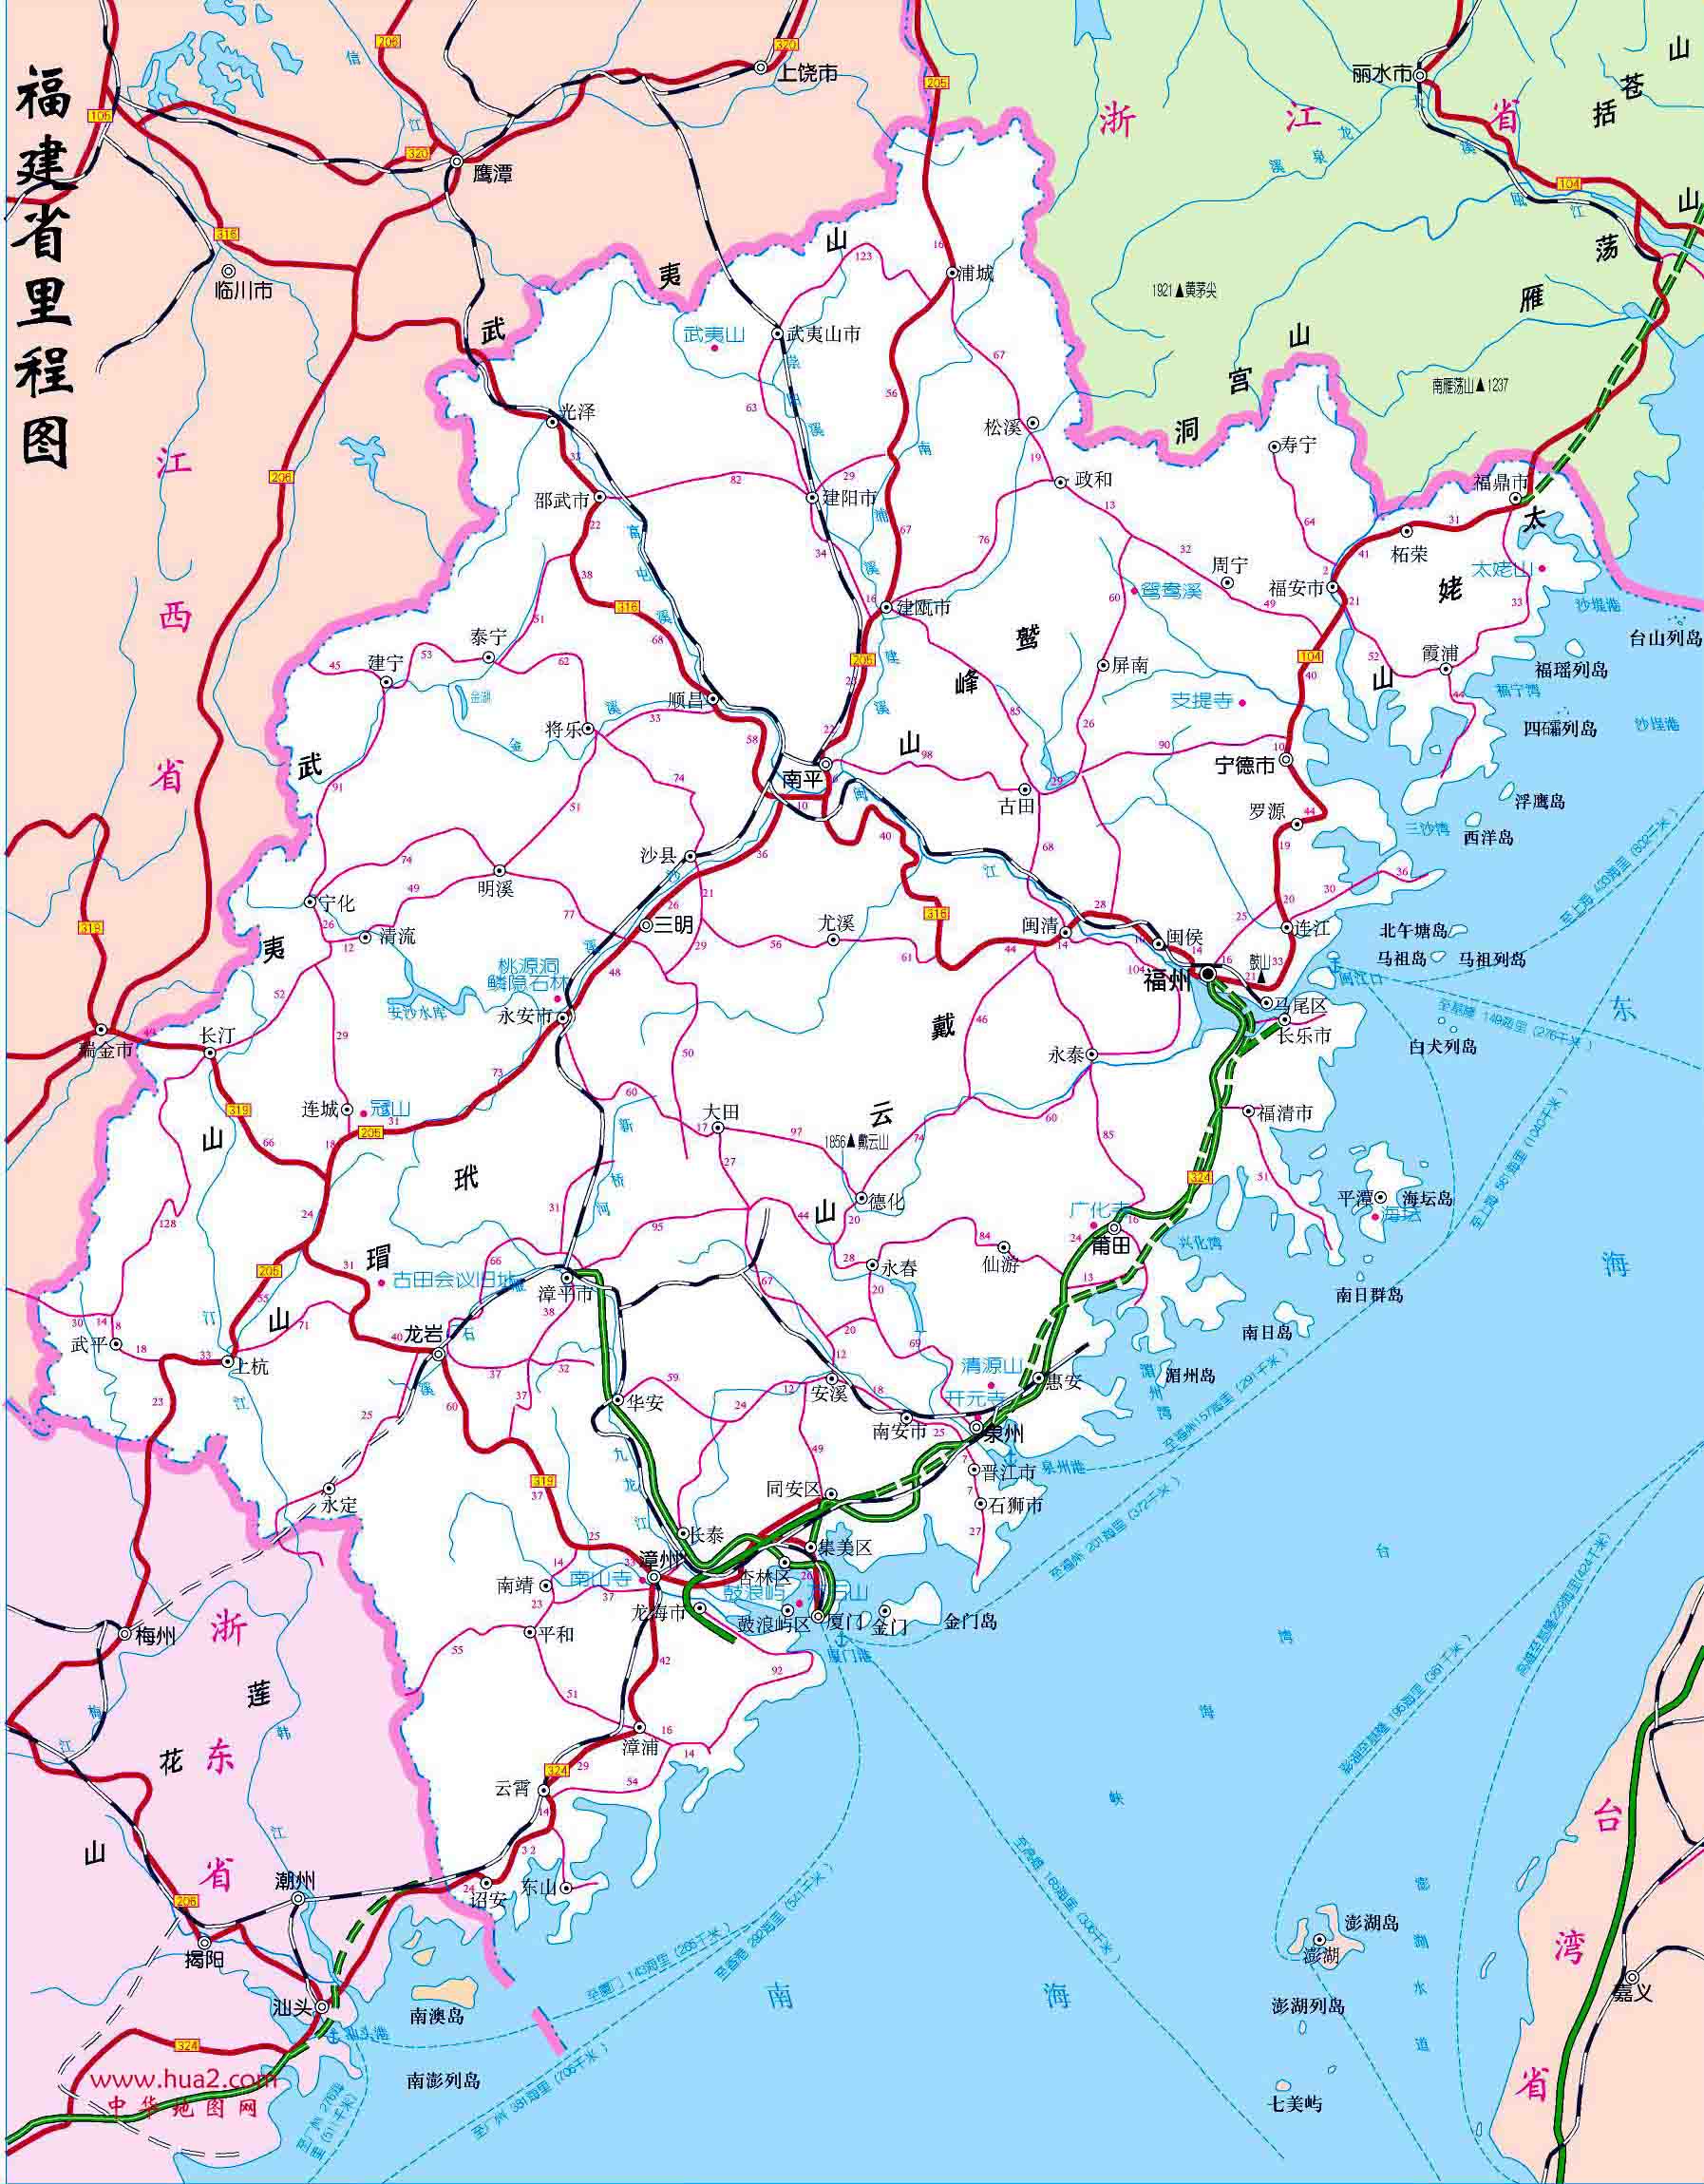 福建省交通地图 - 中国交通地图 - 地理教师网